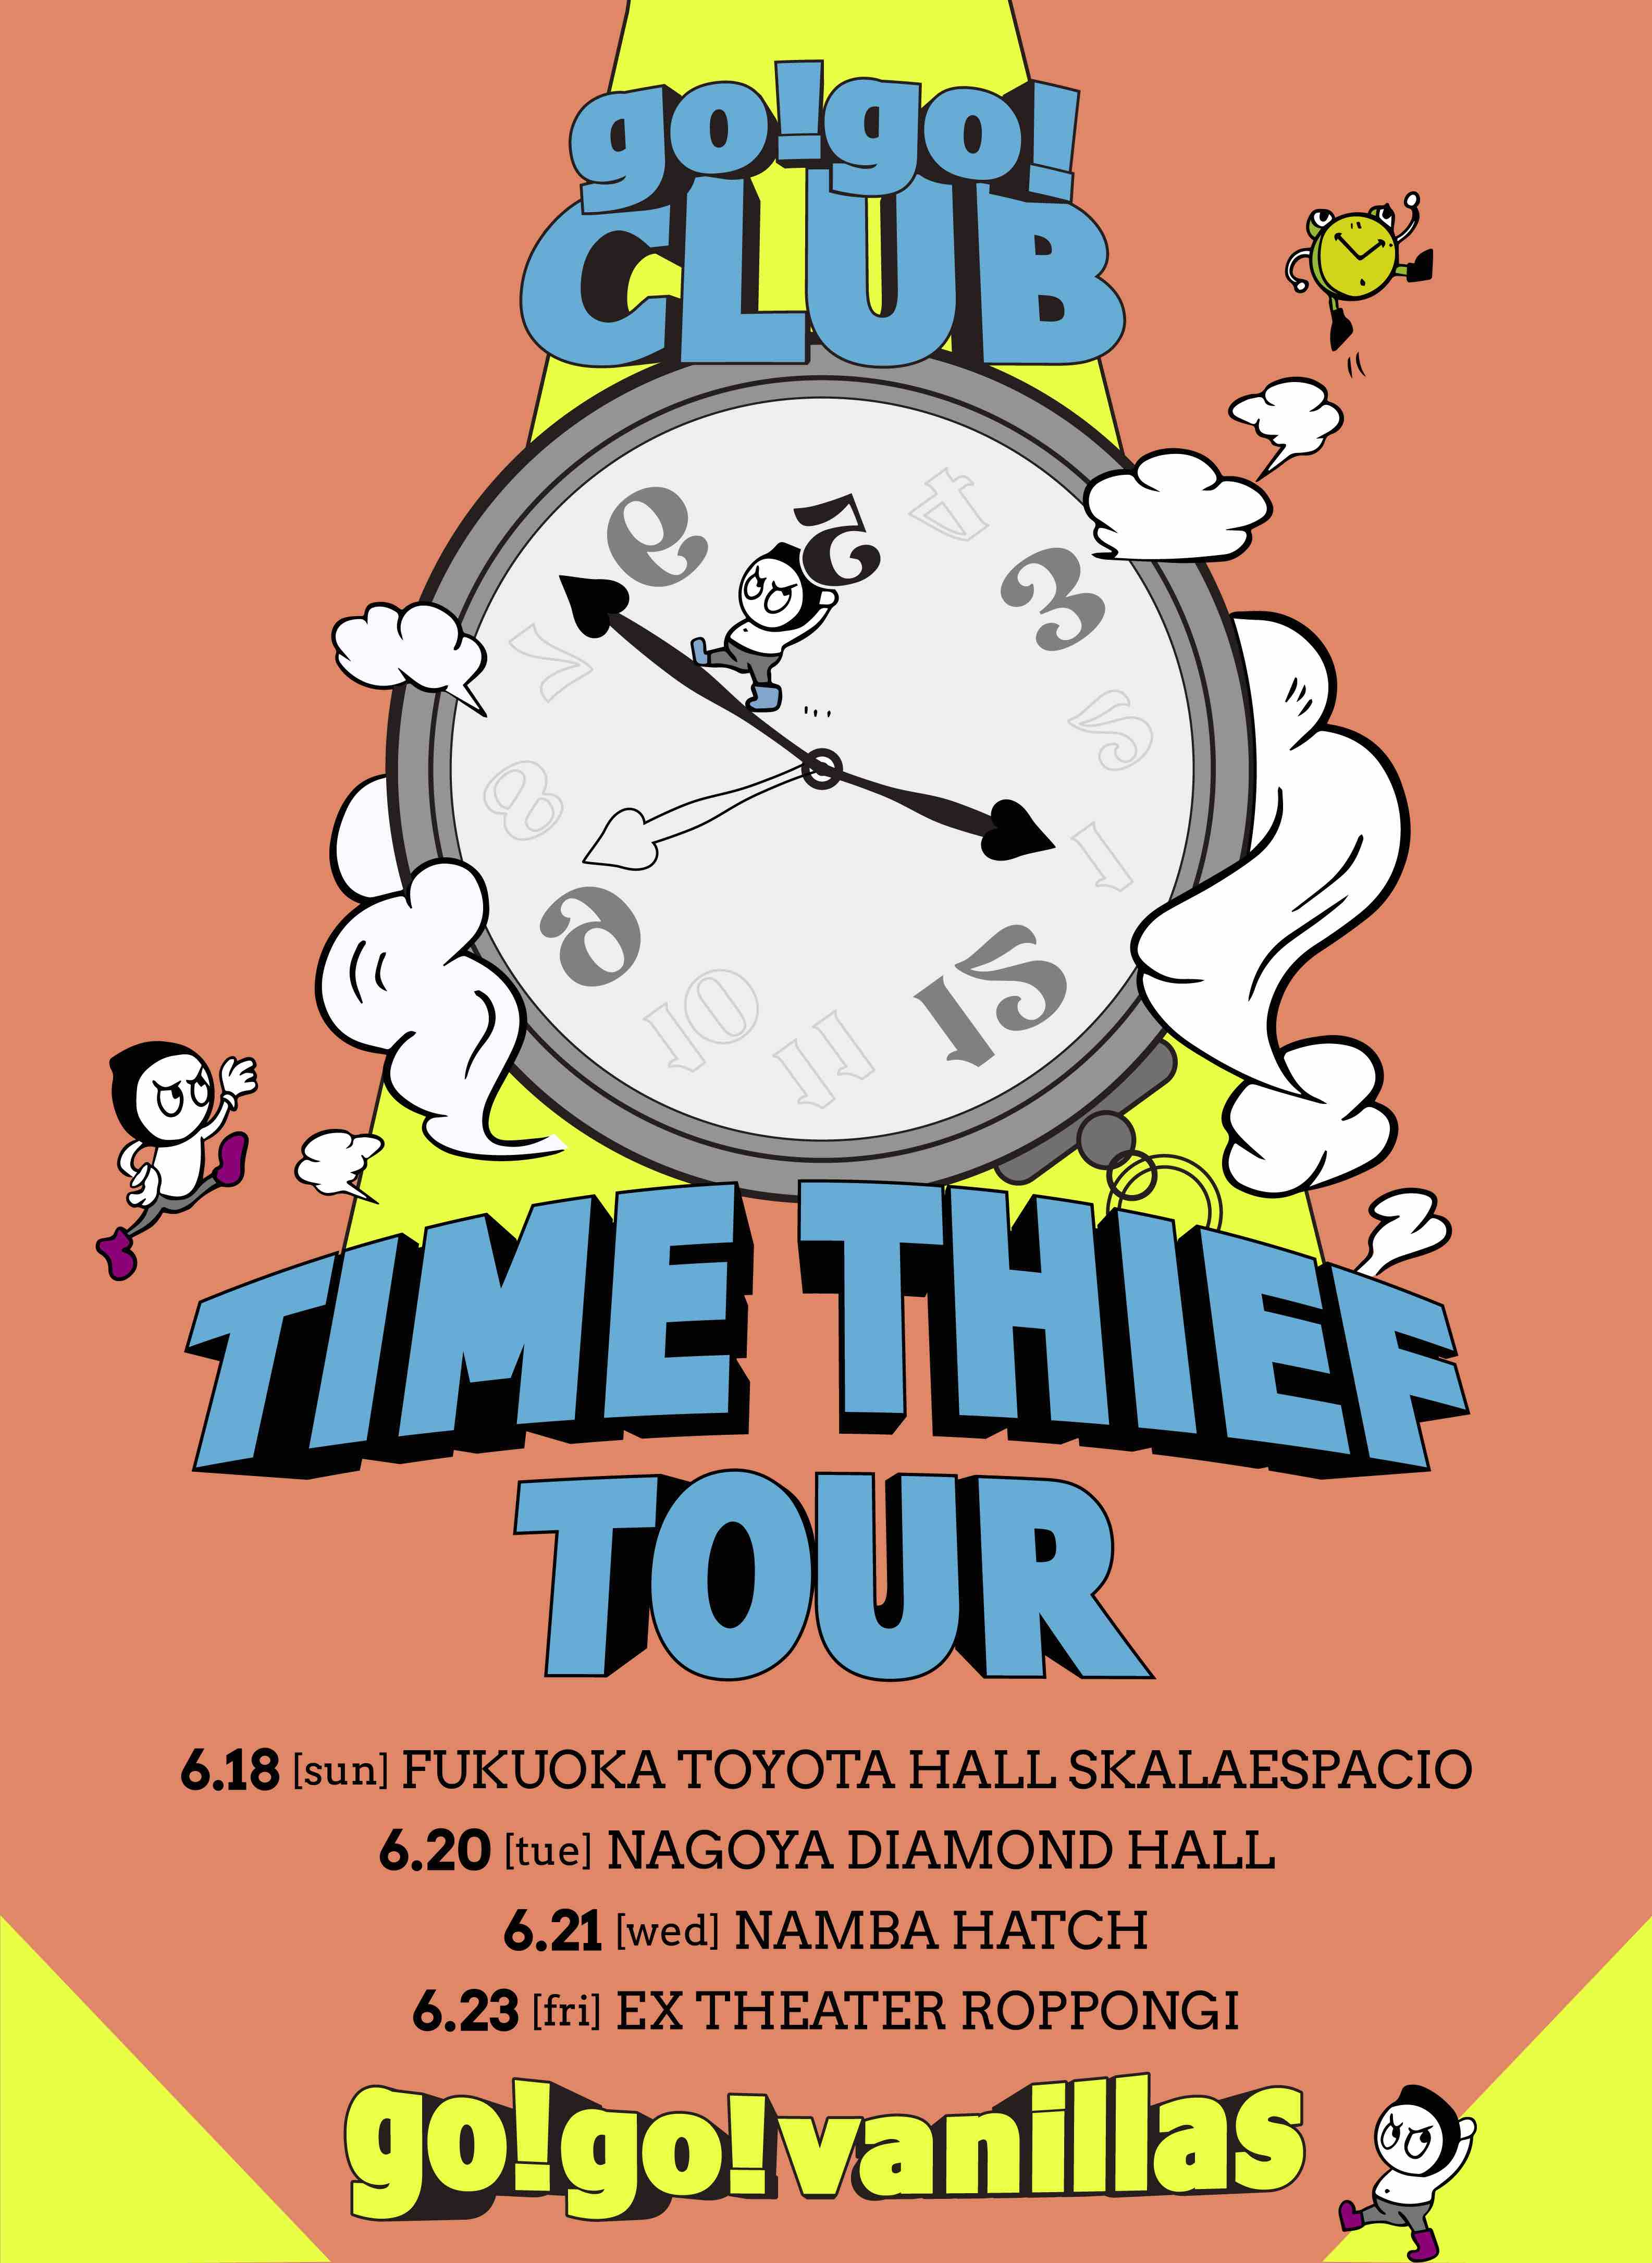 福岡トヨタホール スカラエスパシオ <span class="live-title">go!go!CLUB 会員限定ライブ「TIME THIEF TOUR」</span>